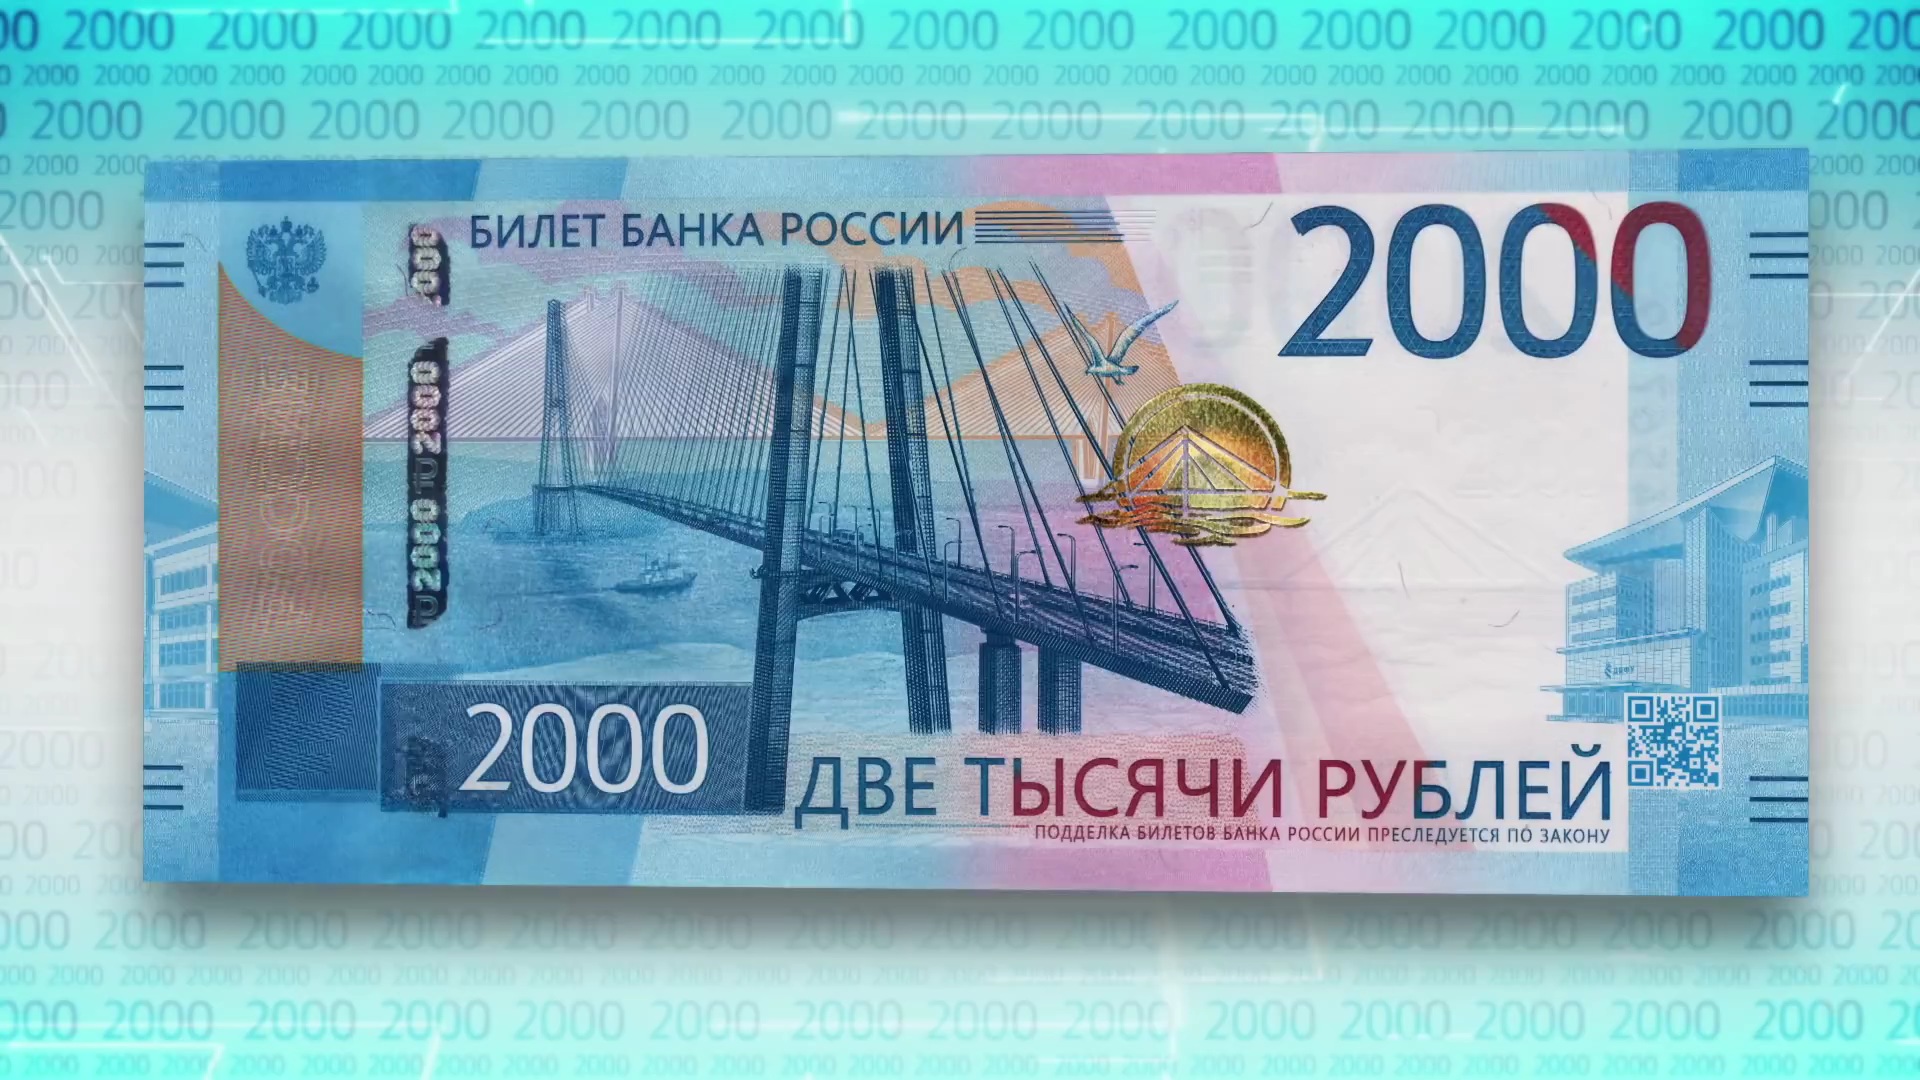 Купюра 200 рублей фото с двух сторон